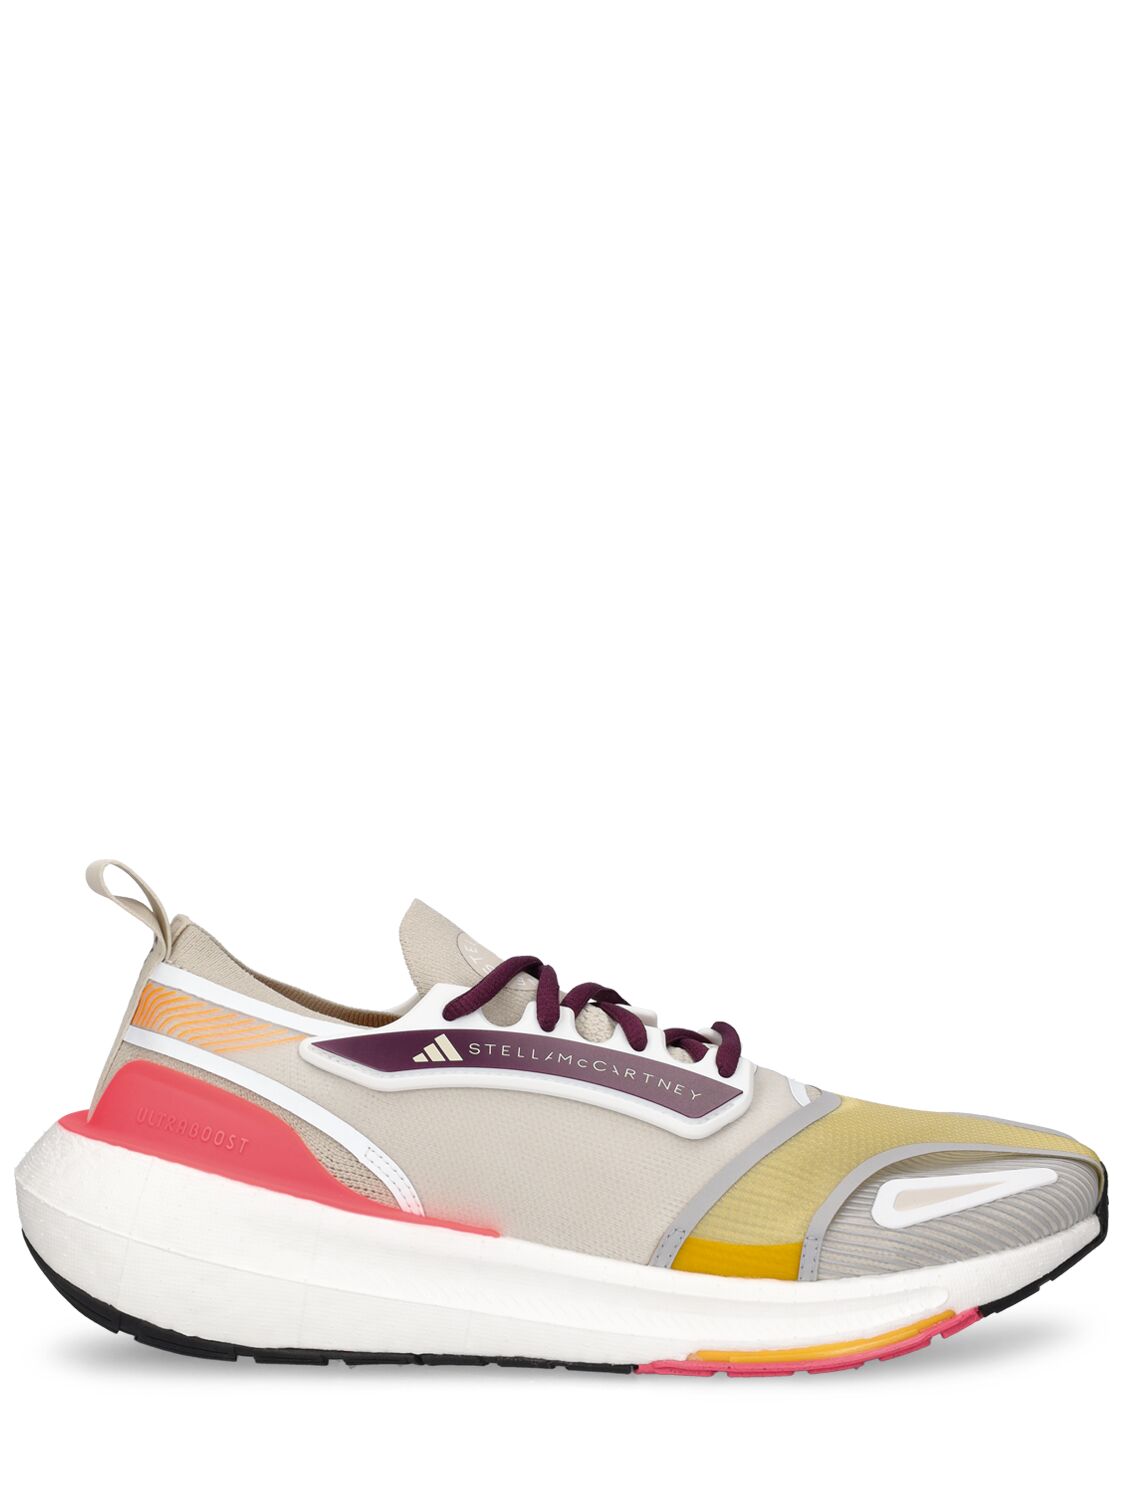 Adidas By Stella Mccartney Ub23 Lower Footprint运动鞋 In Multicolor